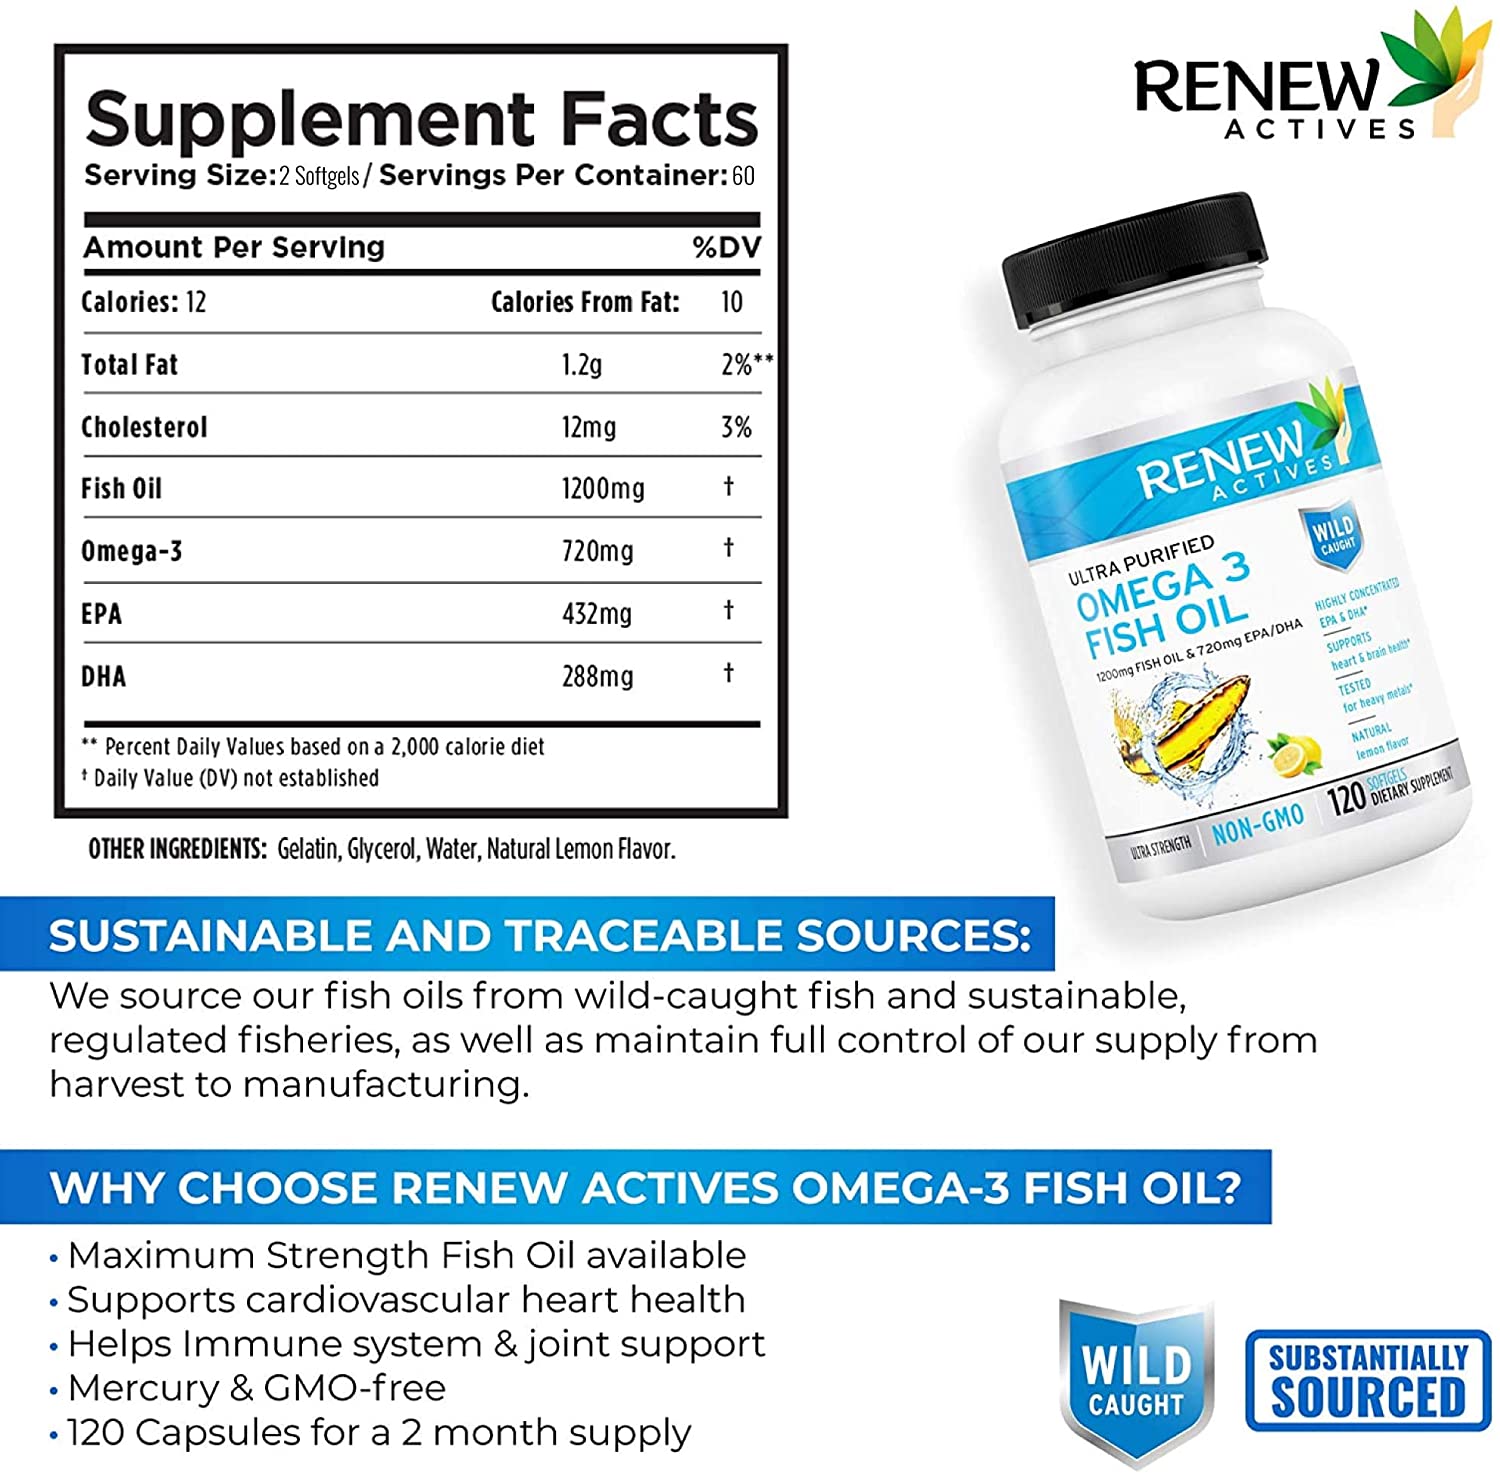 Omega-3 Fish Oil - 120 Softgels